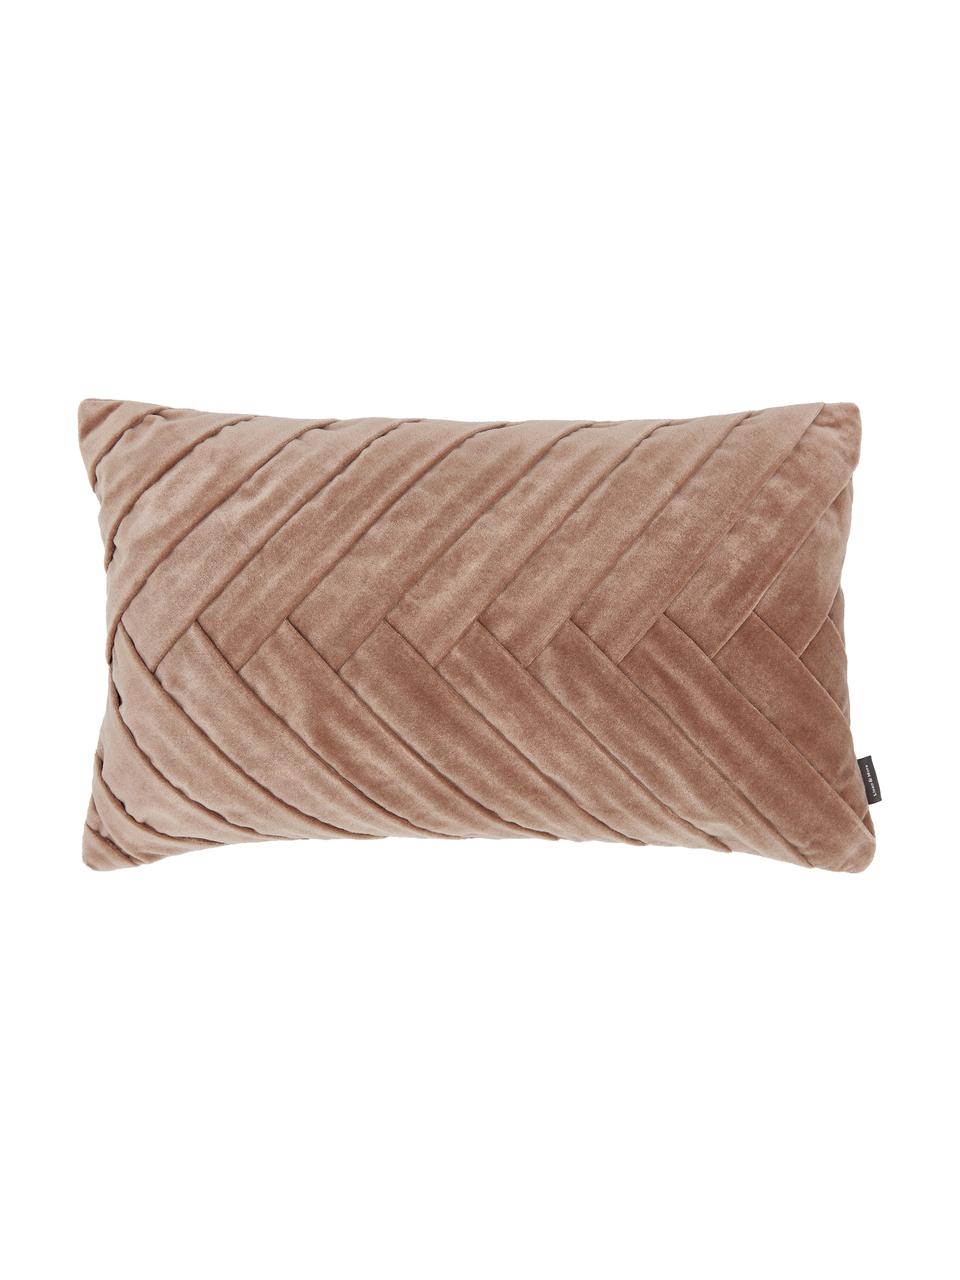 Aksamitna poduszka z wypełnieniem Folded, Tapicerka: 100% aksamit bawełniany, Blady różowy, S 30 x D 50 cm